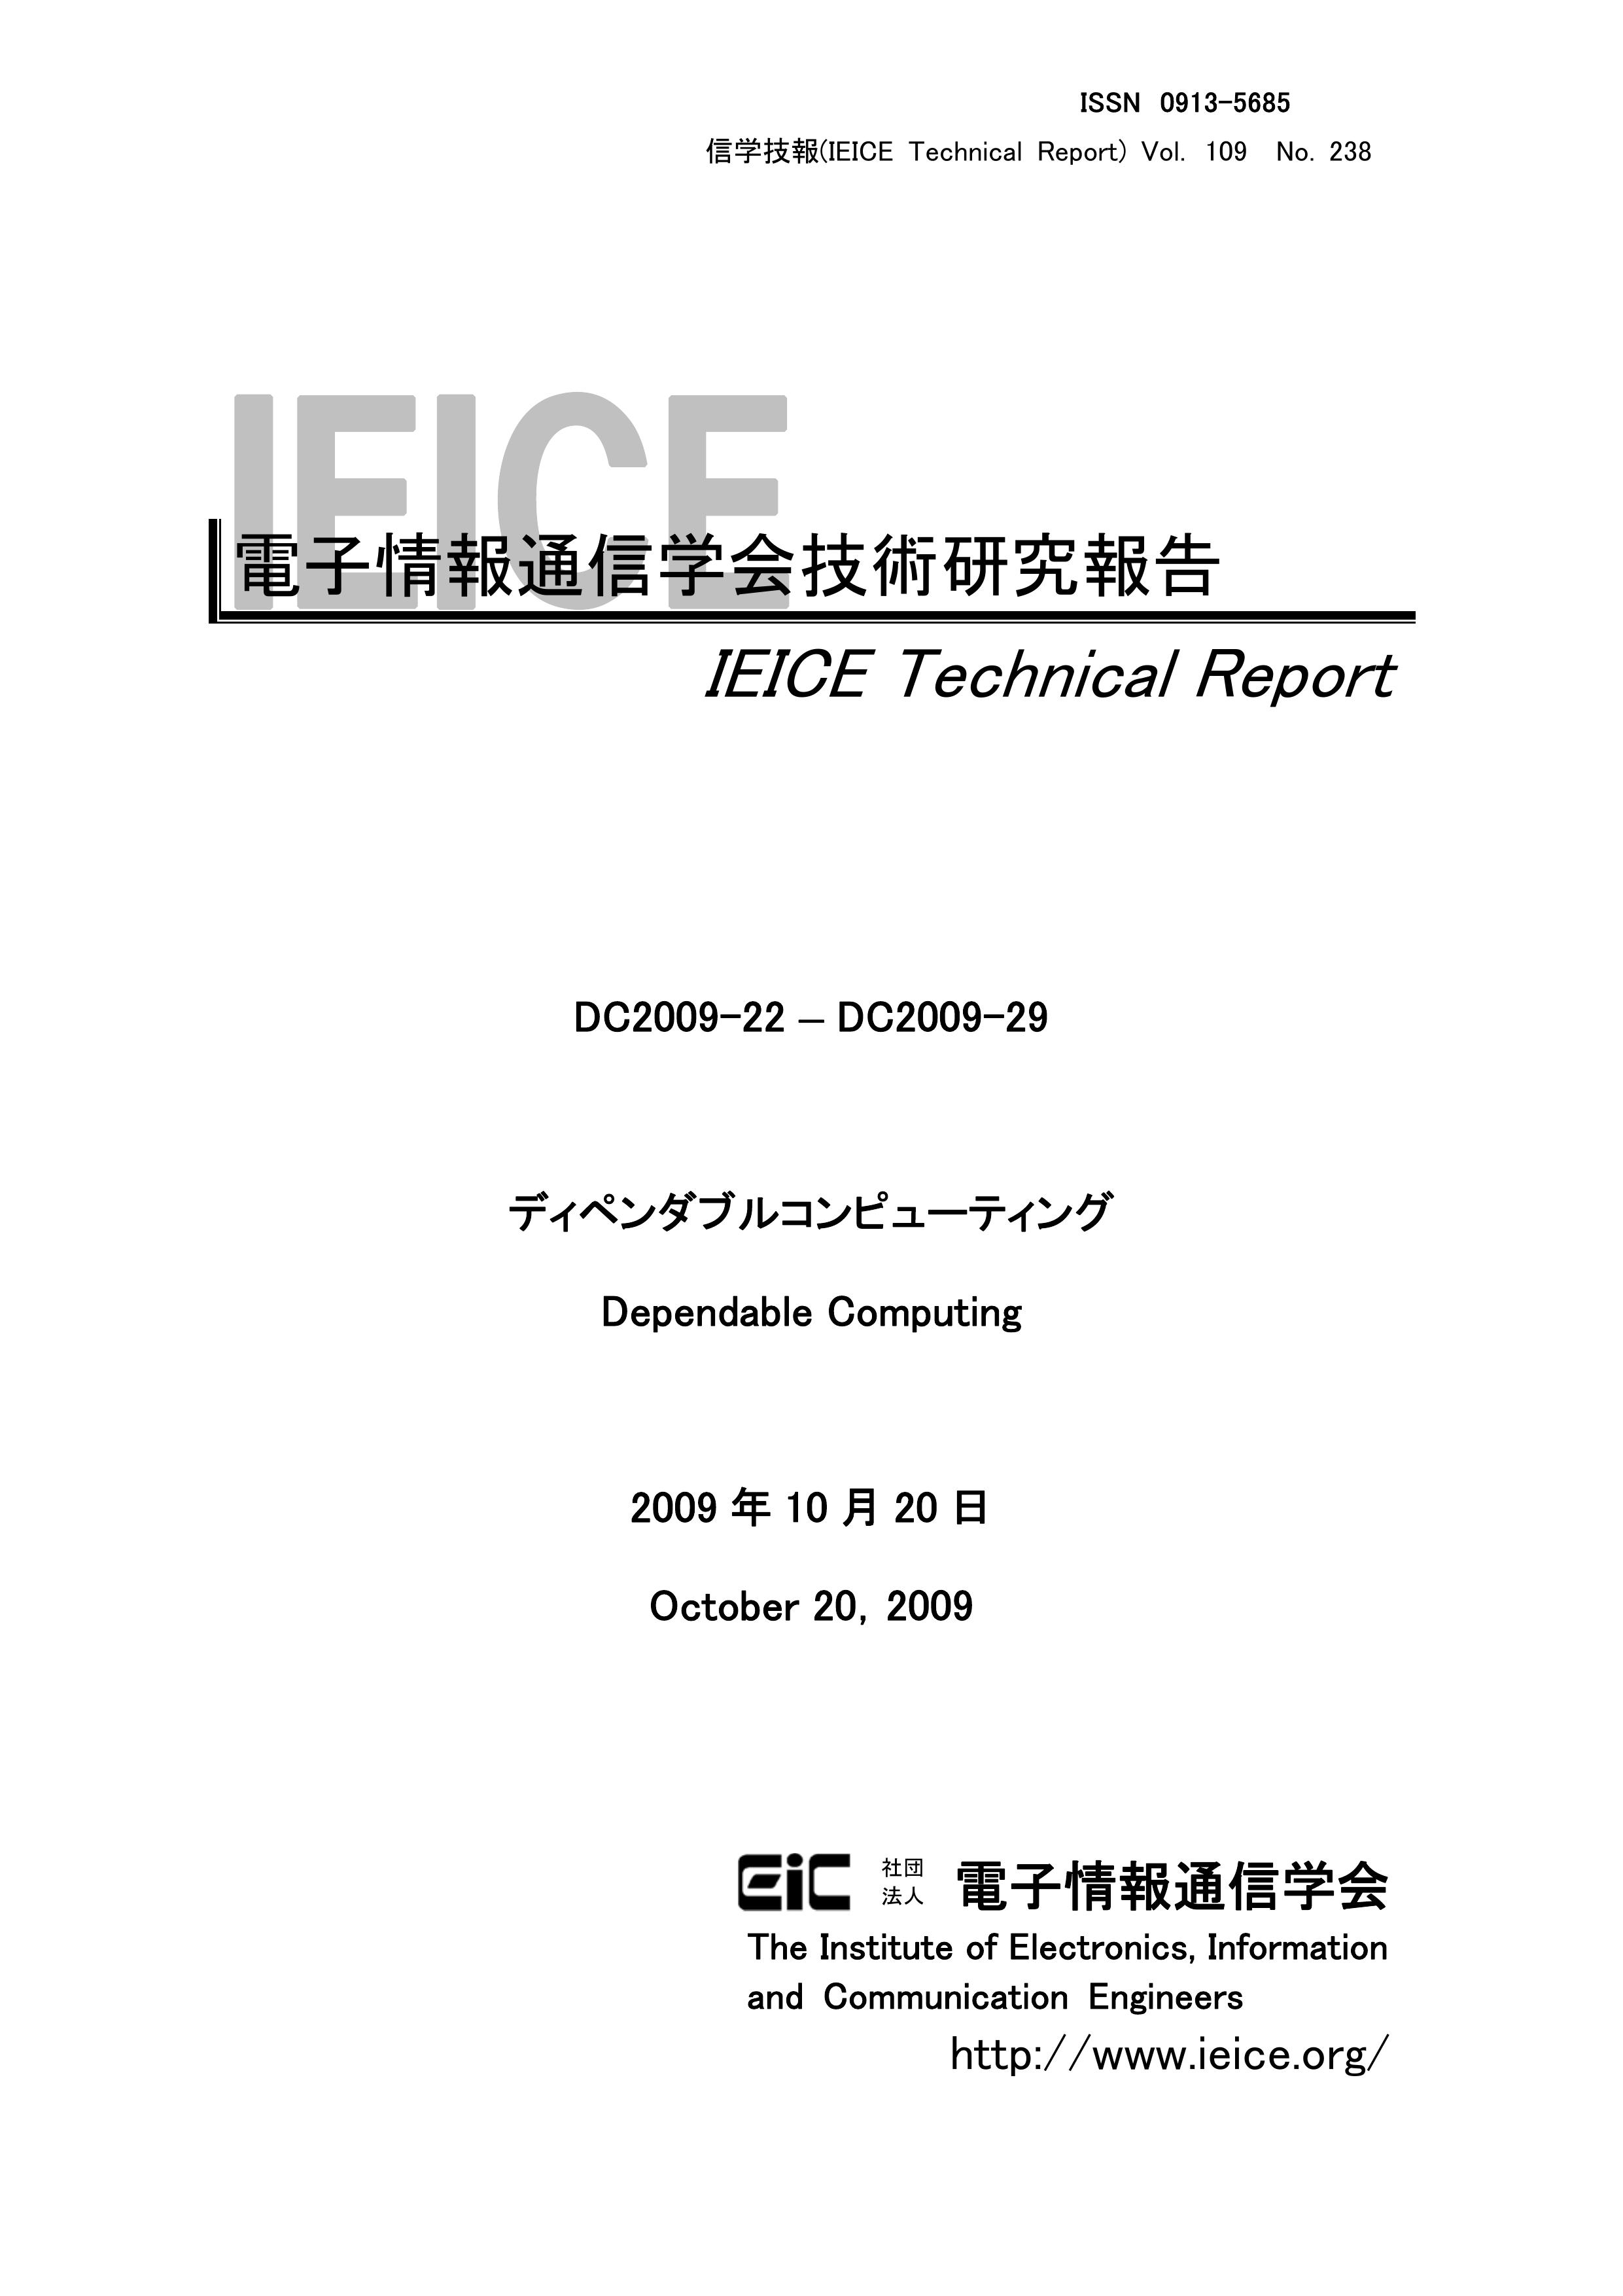 電子情報通信学会技術研究報告 Vol 109 No 238 09